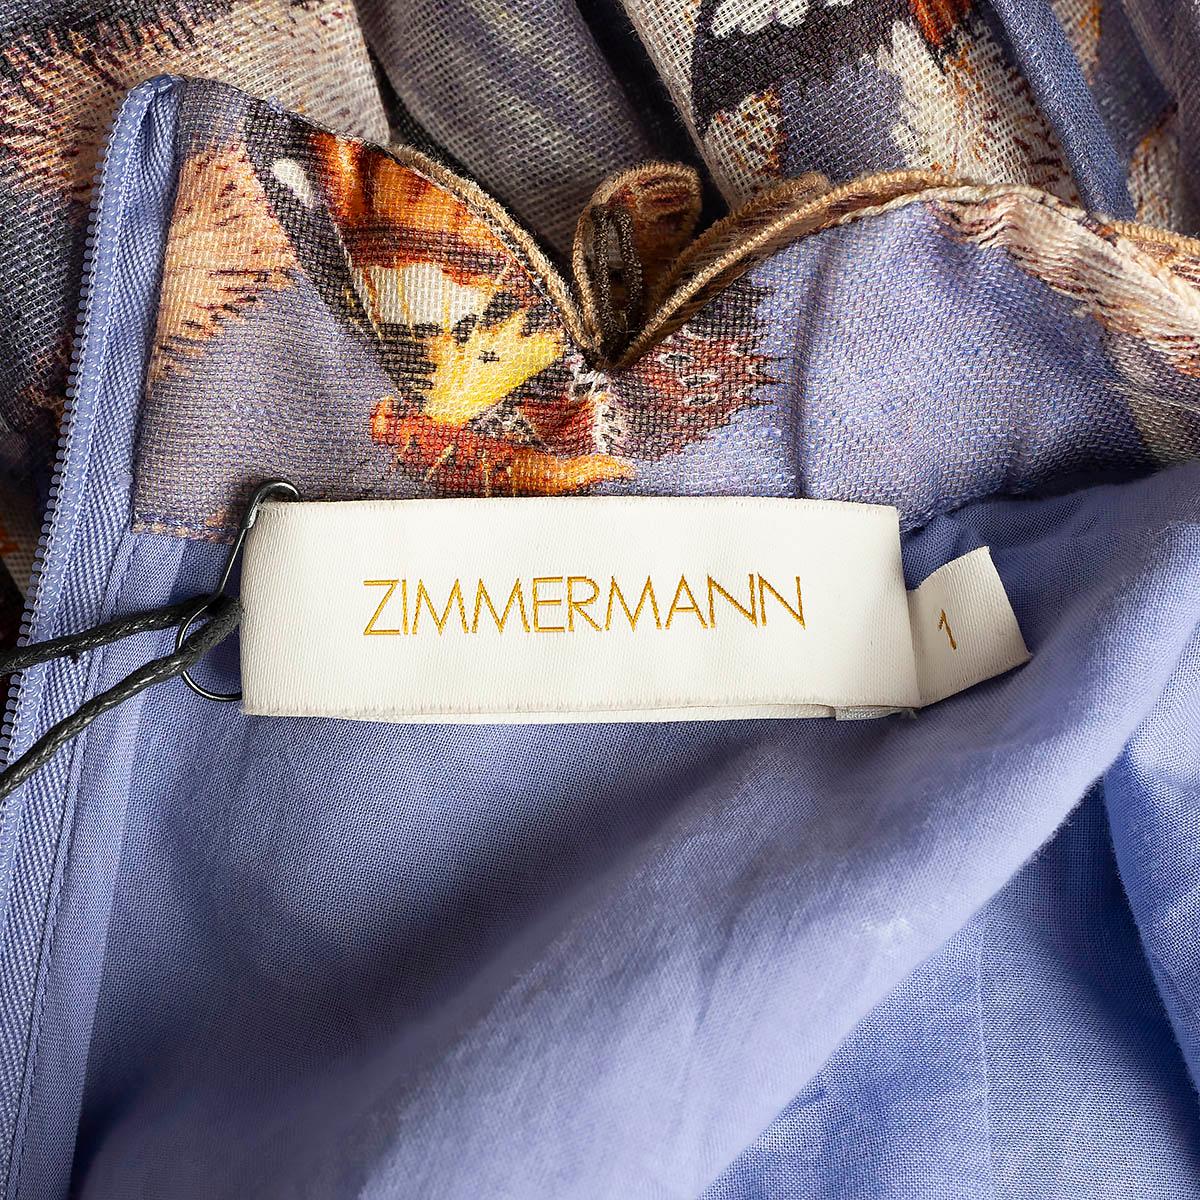 ZIMMERMANN Pandanus purple linen 2020 BOTANICA BUTTERFLY MINI Dress 1 S For Sale 3